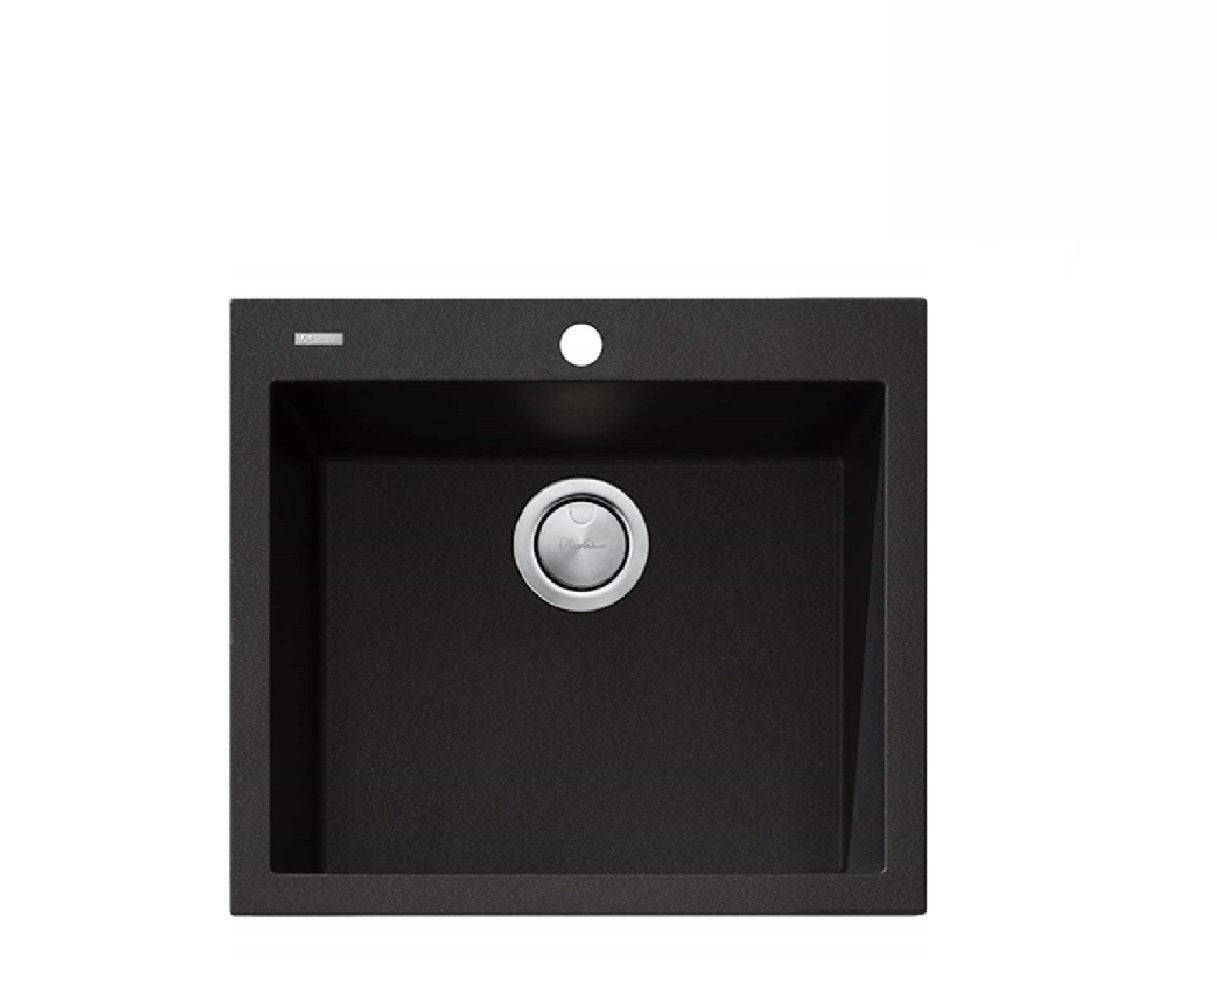 Oliveri Santorini Black Large Bowl 560x500mm Inset Sink (One Taphole) ST-BL1551